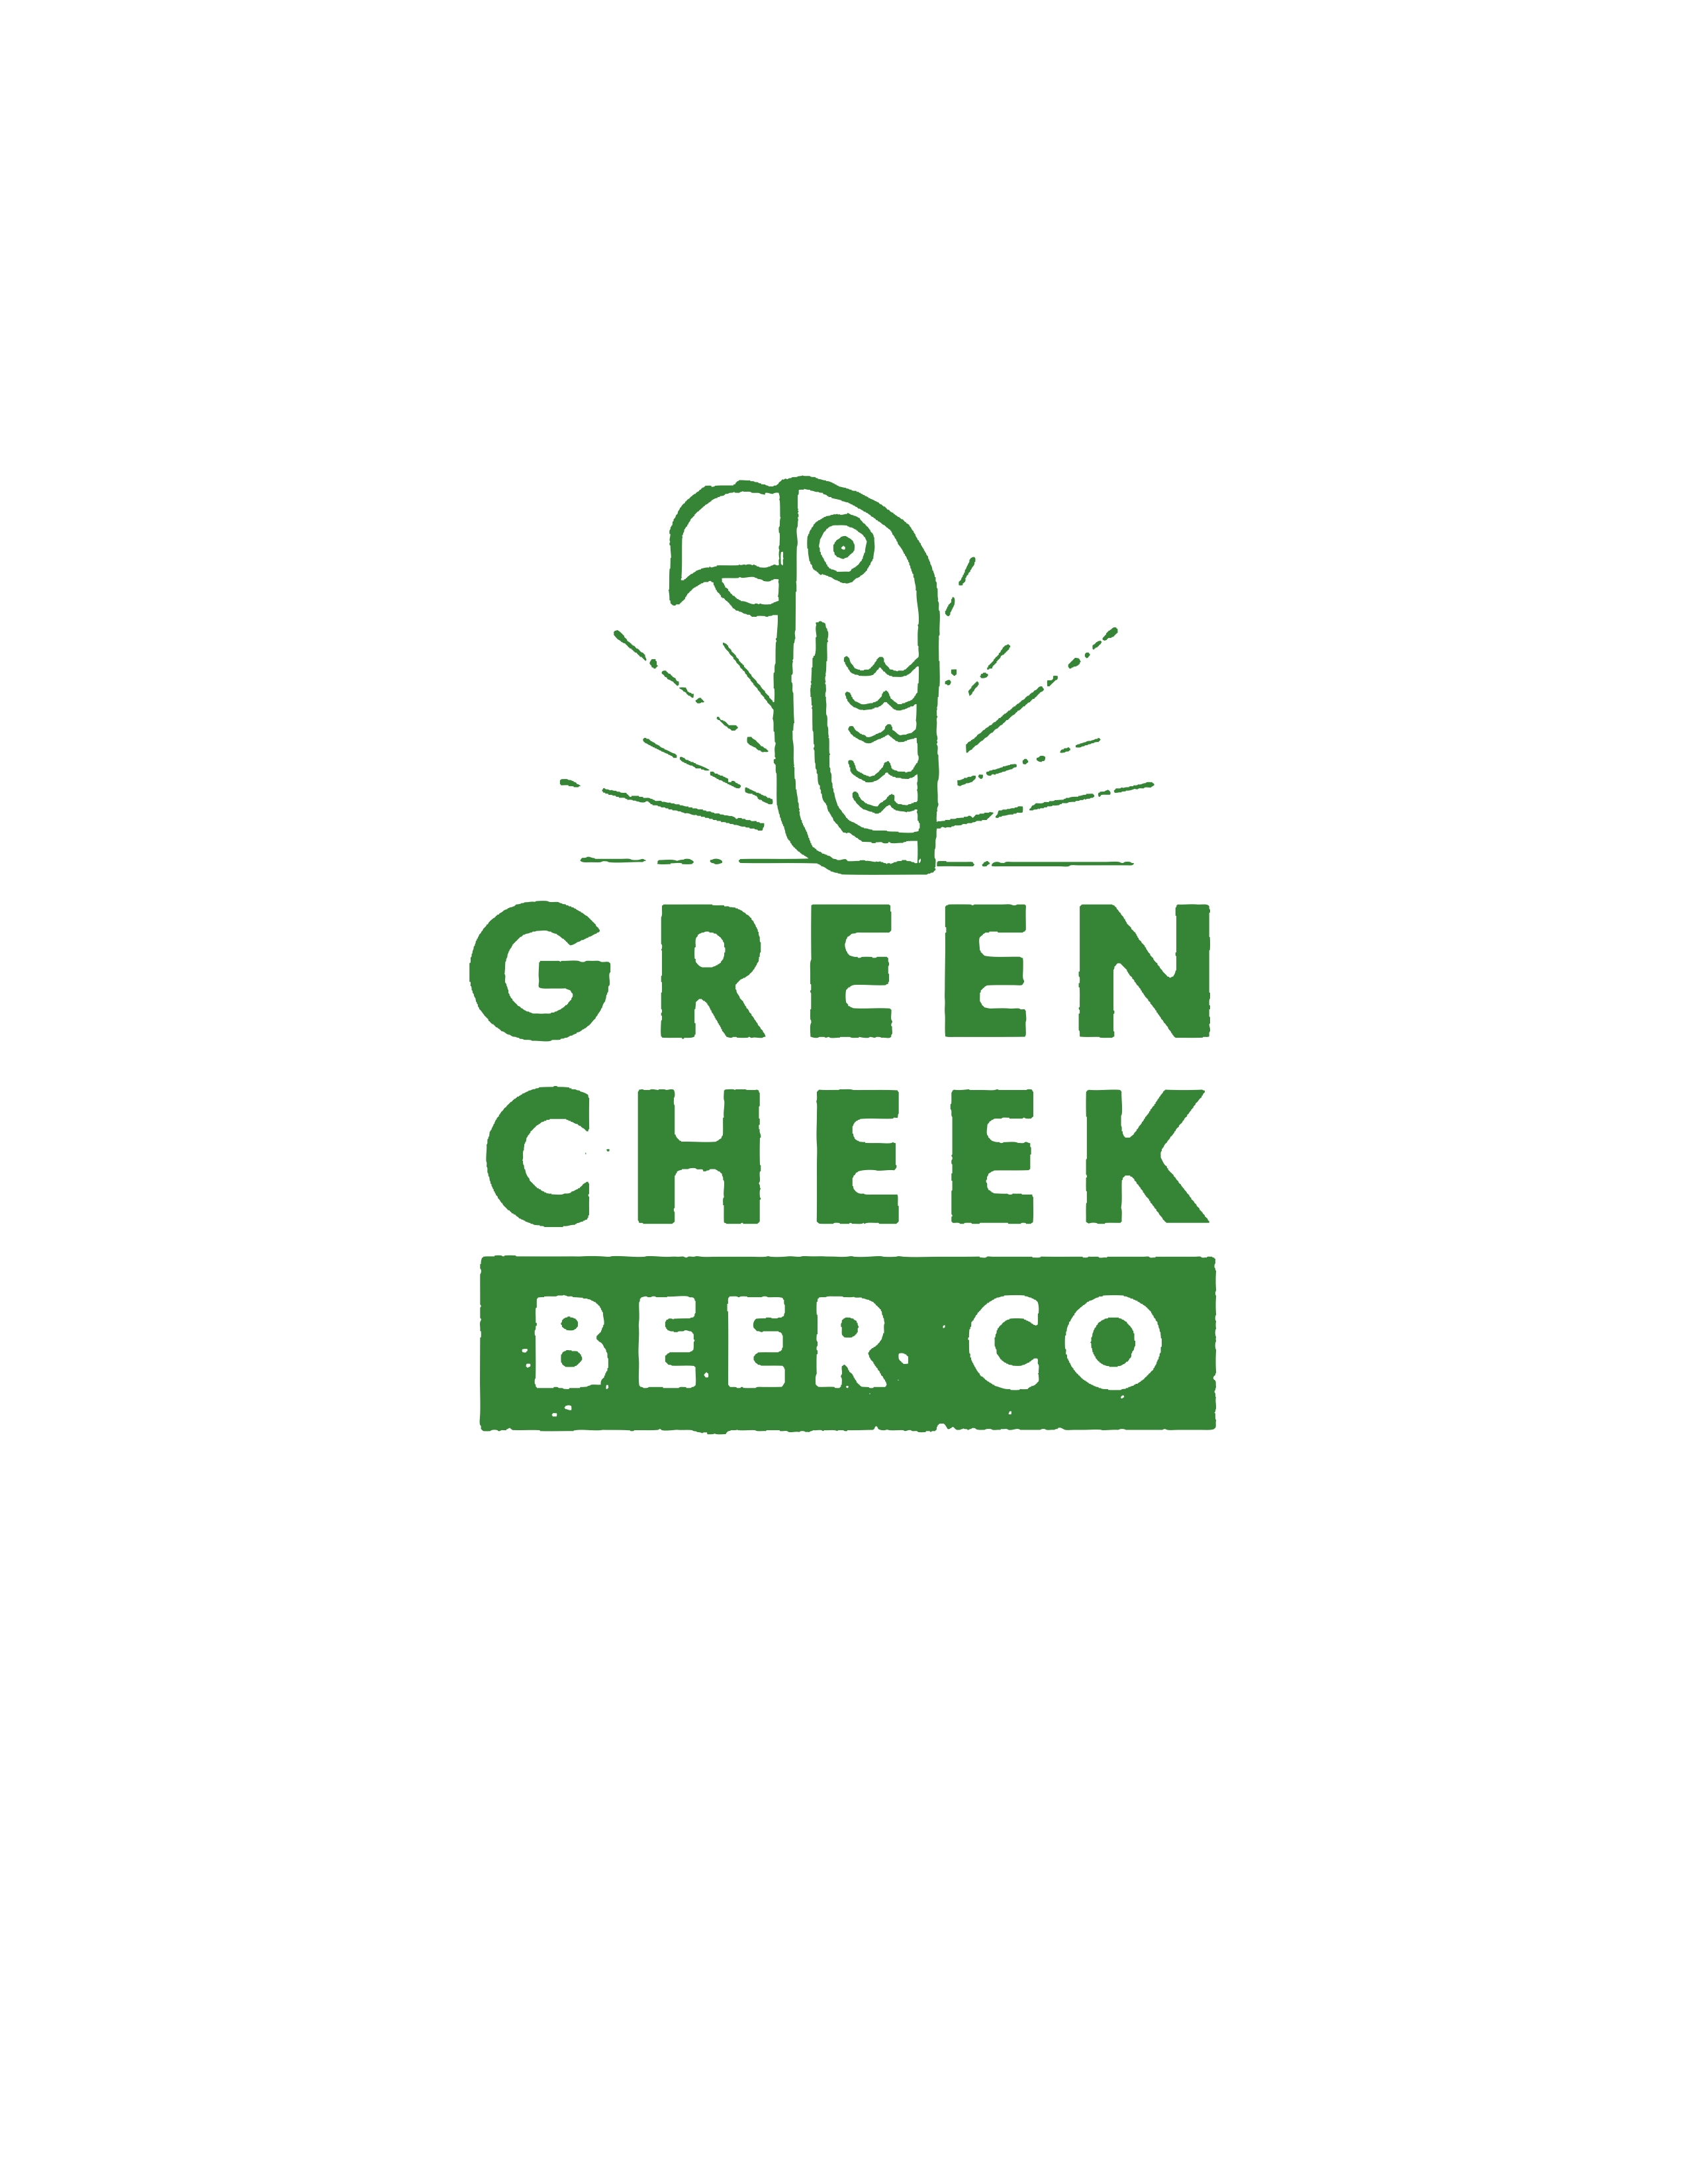 Green Cheek Beer Company - Costa Mesa